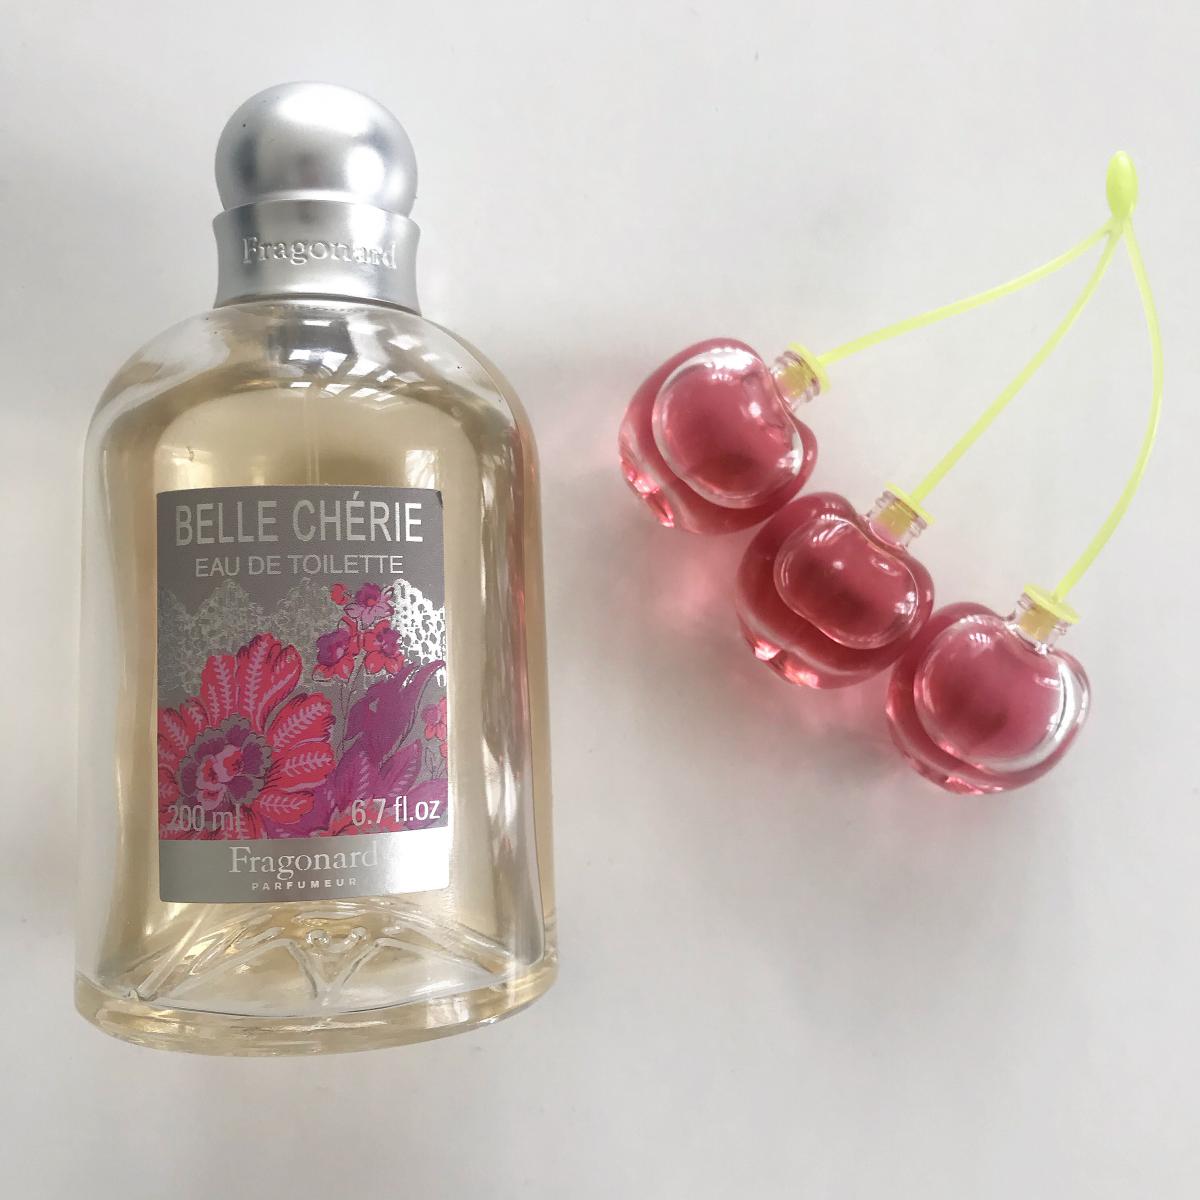 Belle Cherie Fragonard Parfum Een Geur Voor Dames 2012 5986